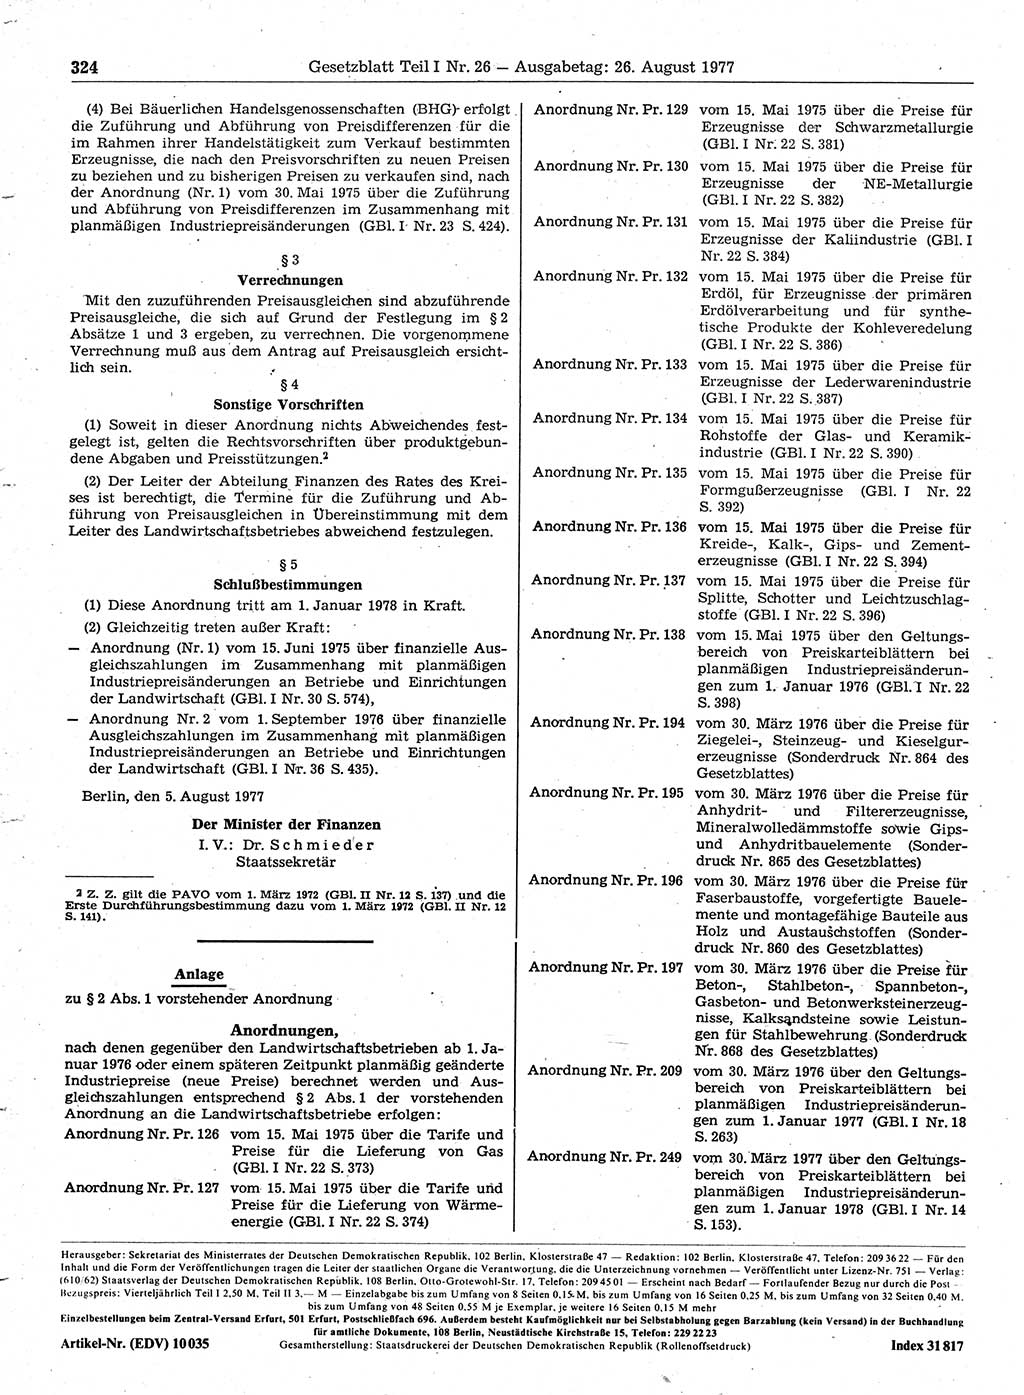 Gesetzblatt (GBl.) der Deutschen Demokratischen Republik (DDR) Teil Ⅰ 1977, Seite 324 (GBl. DDR Ⅰ 1977, S. 324)